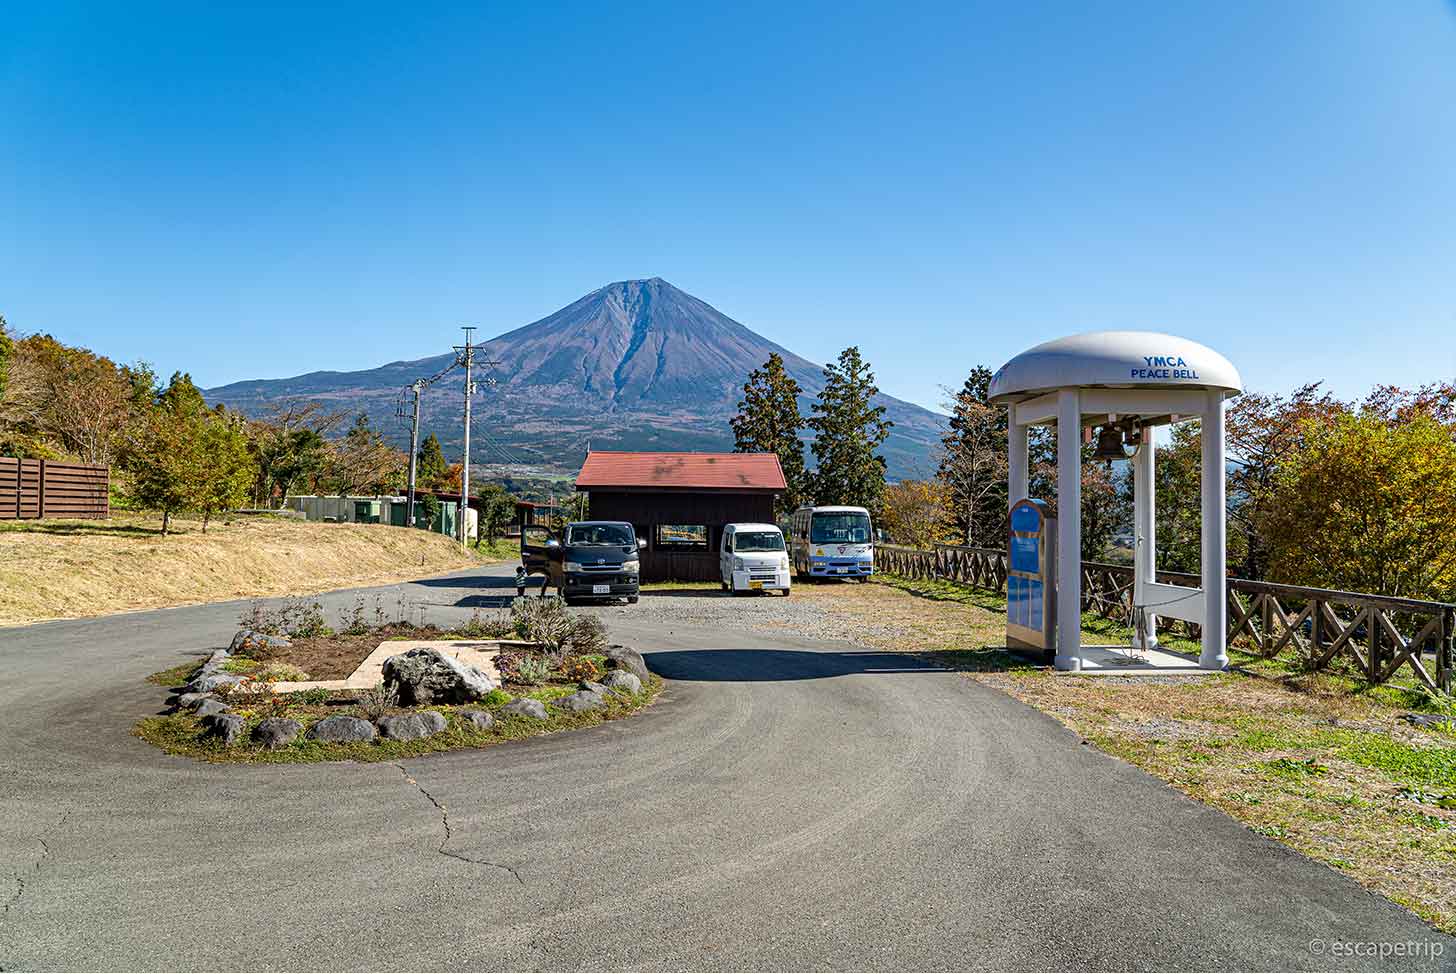 Ymca グローバル エコ ヴィレッジ 富士山 富士山YMCAグローバル・エコ・ヴィレッジでゆるキャン△キャンプ